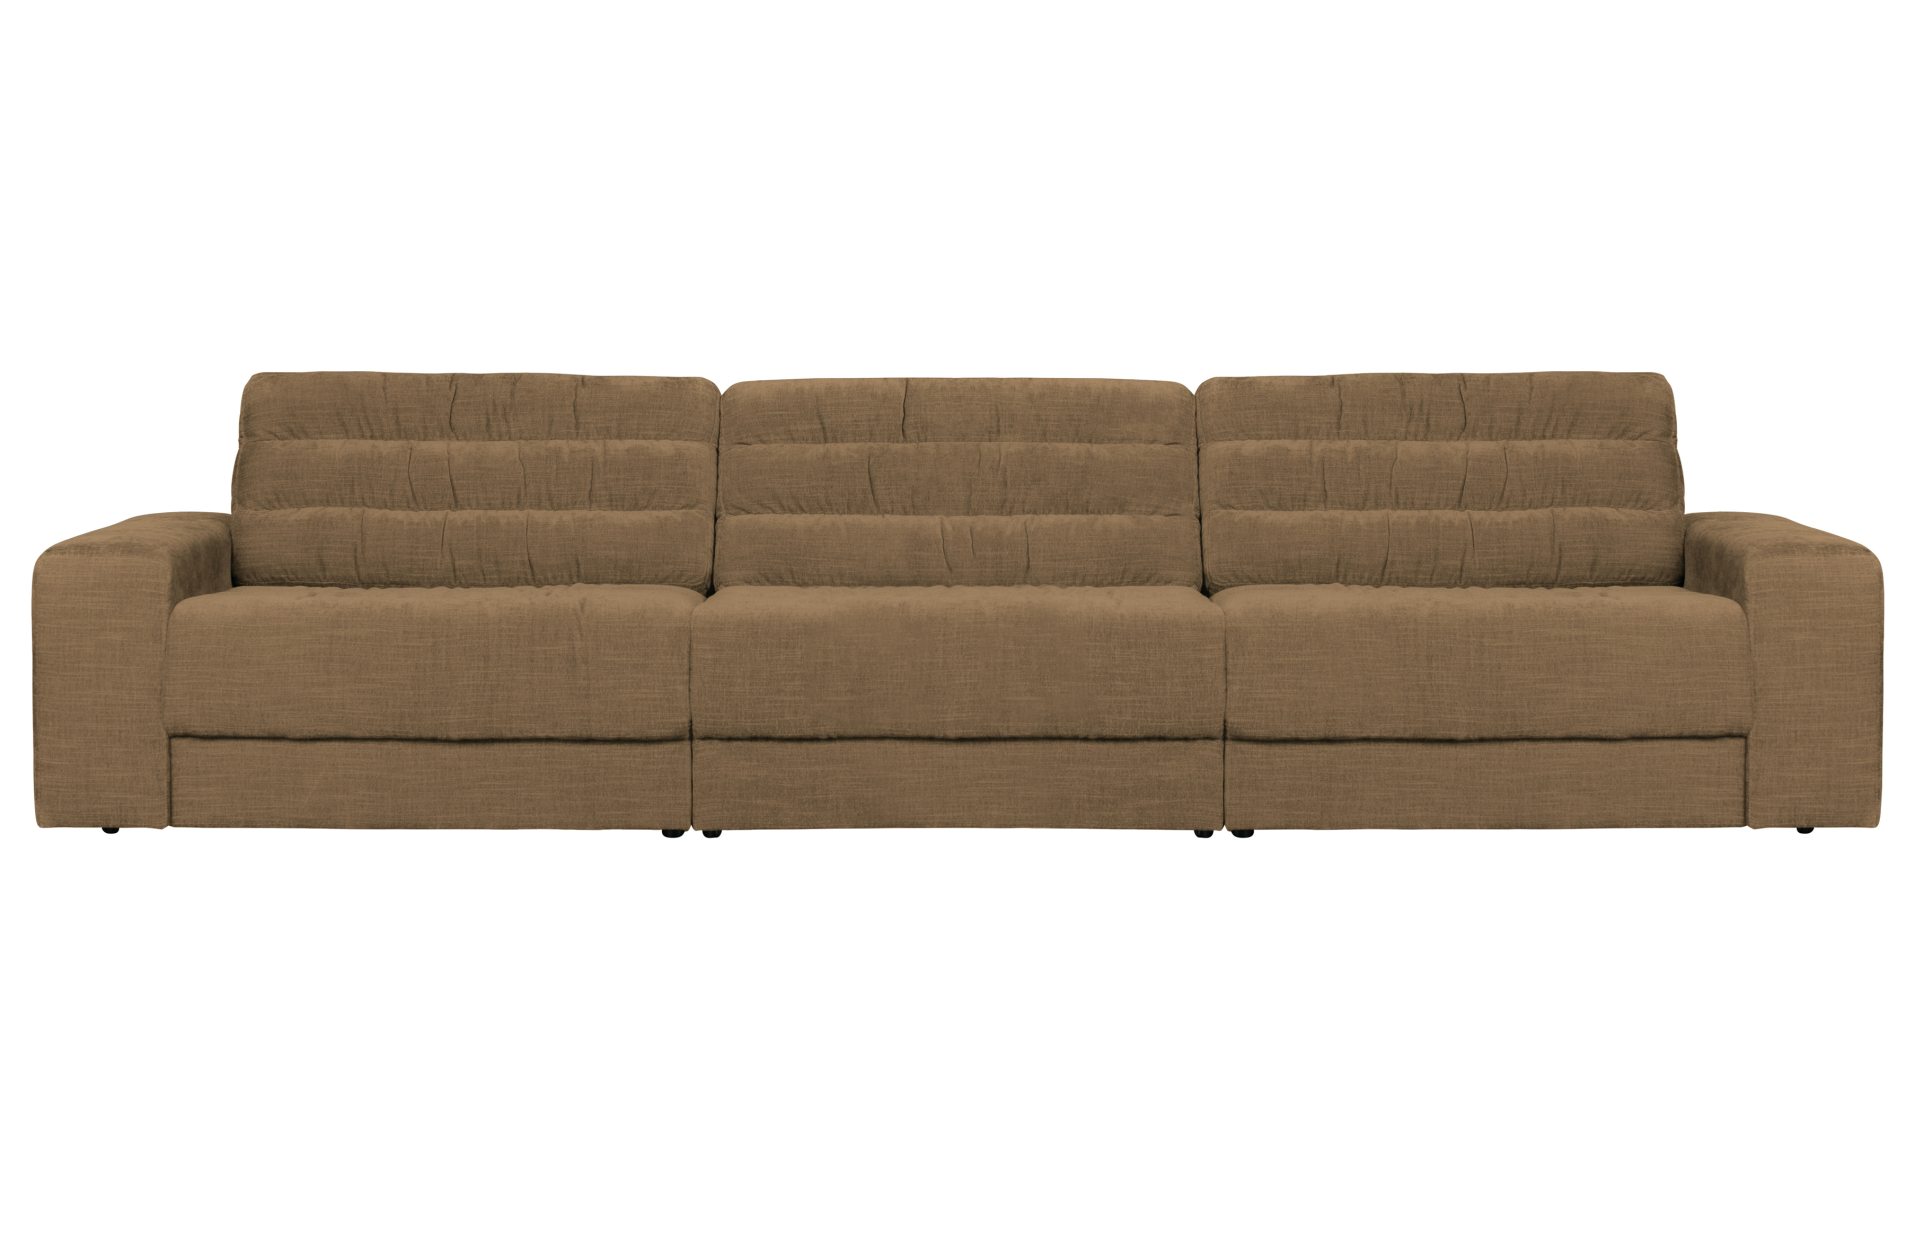 Das Sofa Date überzeugt mit seinem klassischen Design. Gefertigt wurde es aus einem Vintage Stoff, welcher einen Sand Farbton besitzen. Das Gestell ist aus Kunststoff und hat eine schwarze Farbe. Das Sofa hat eine Breite von 316 cm.